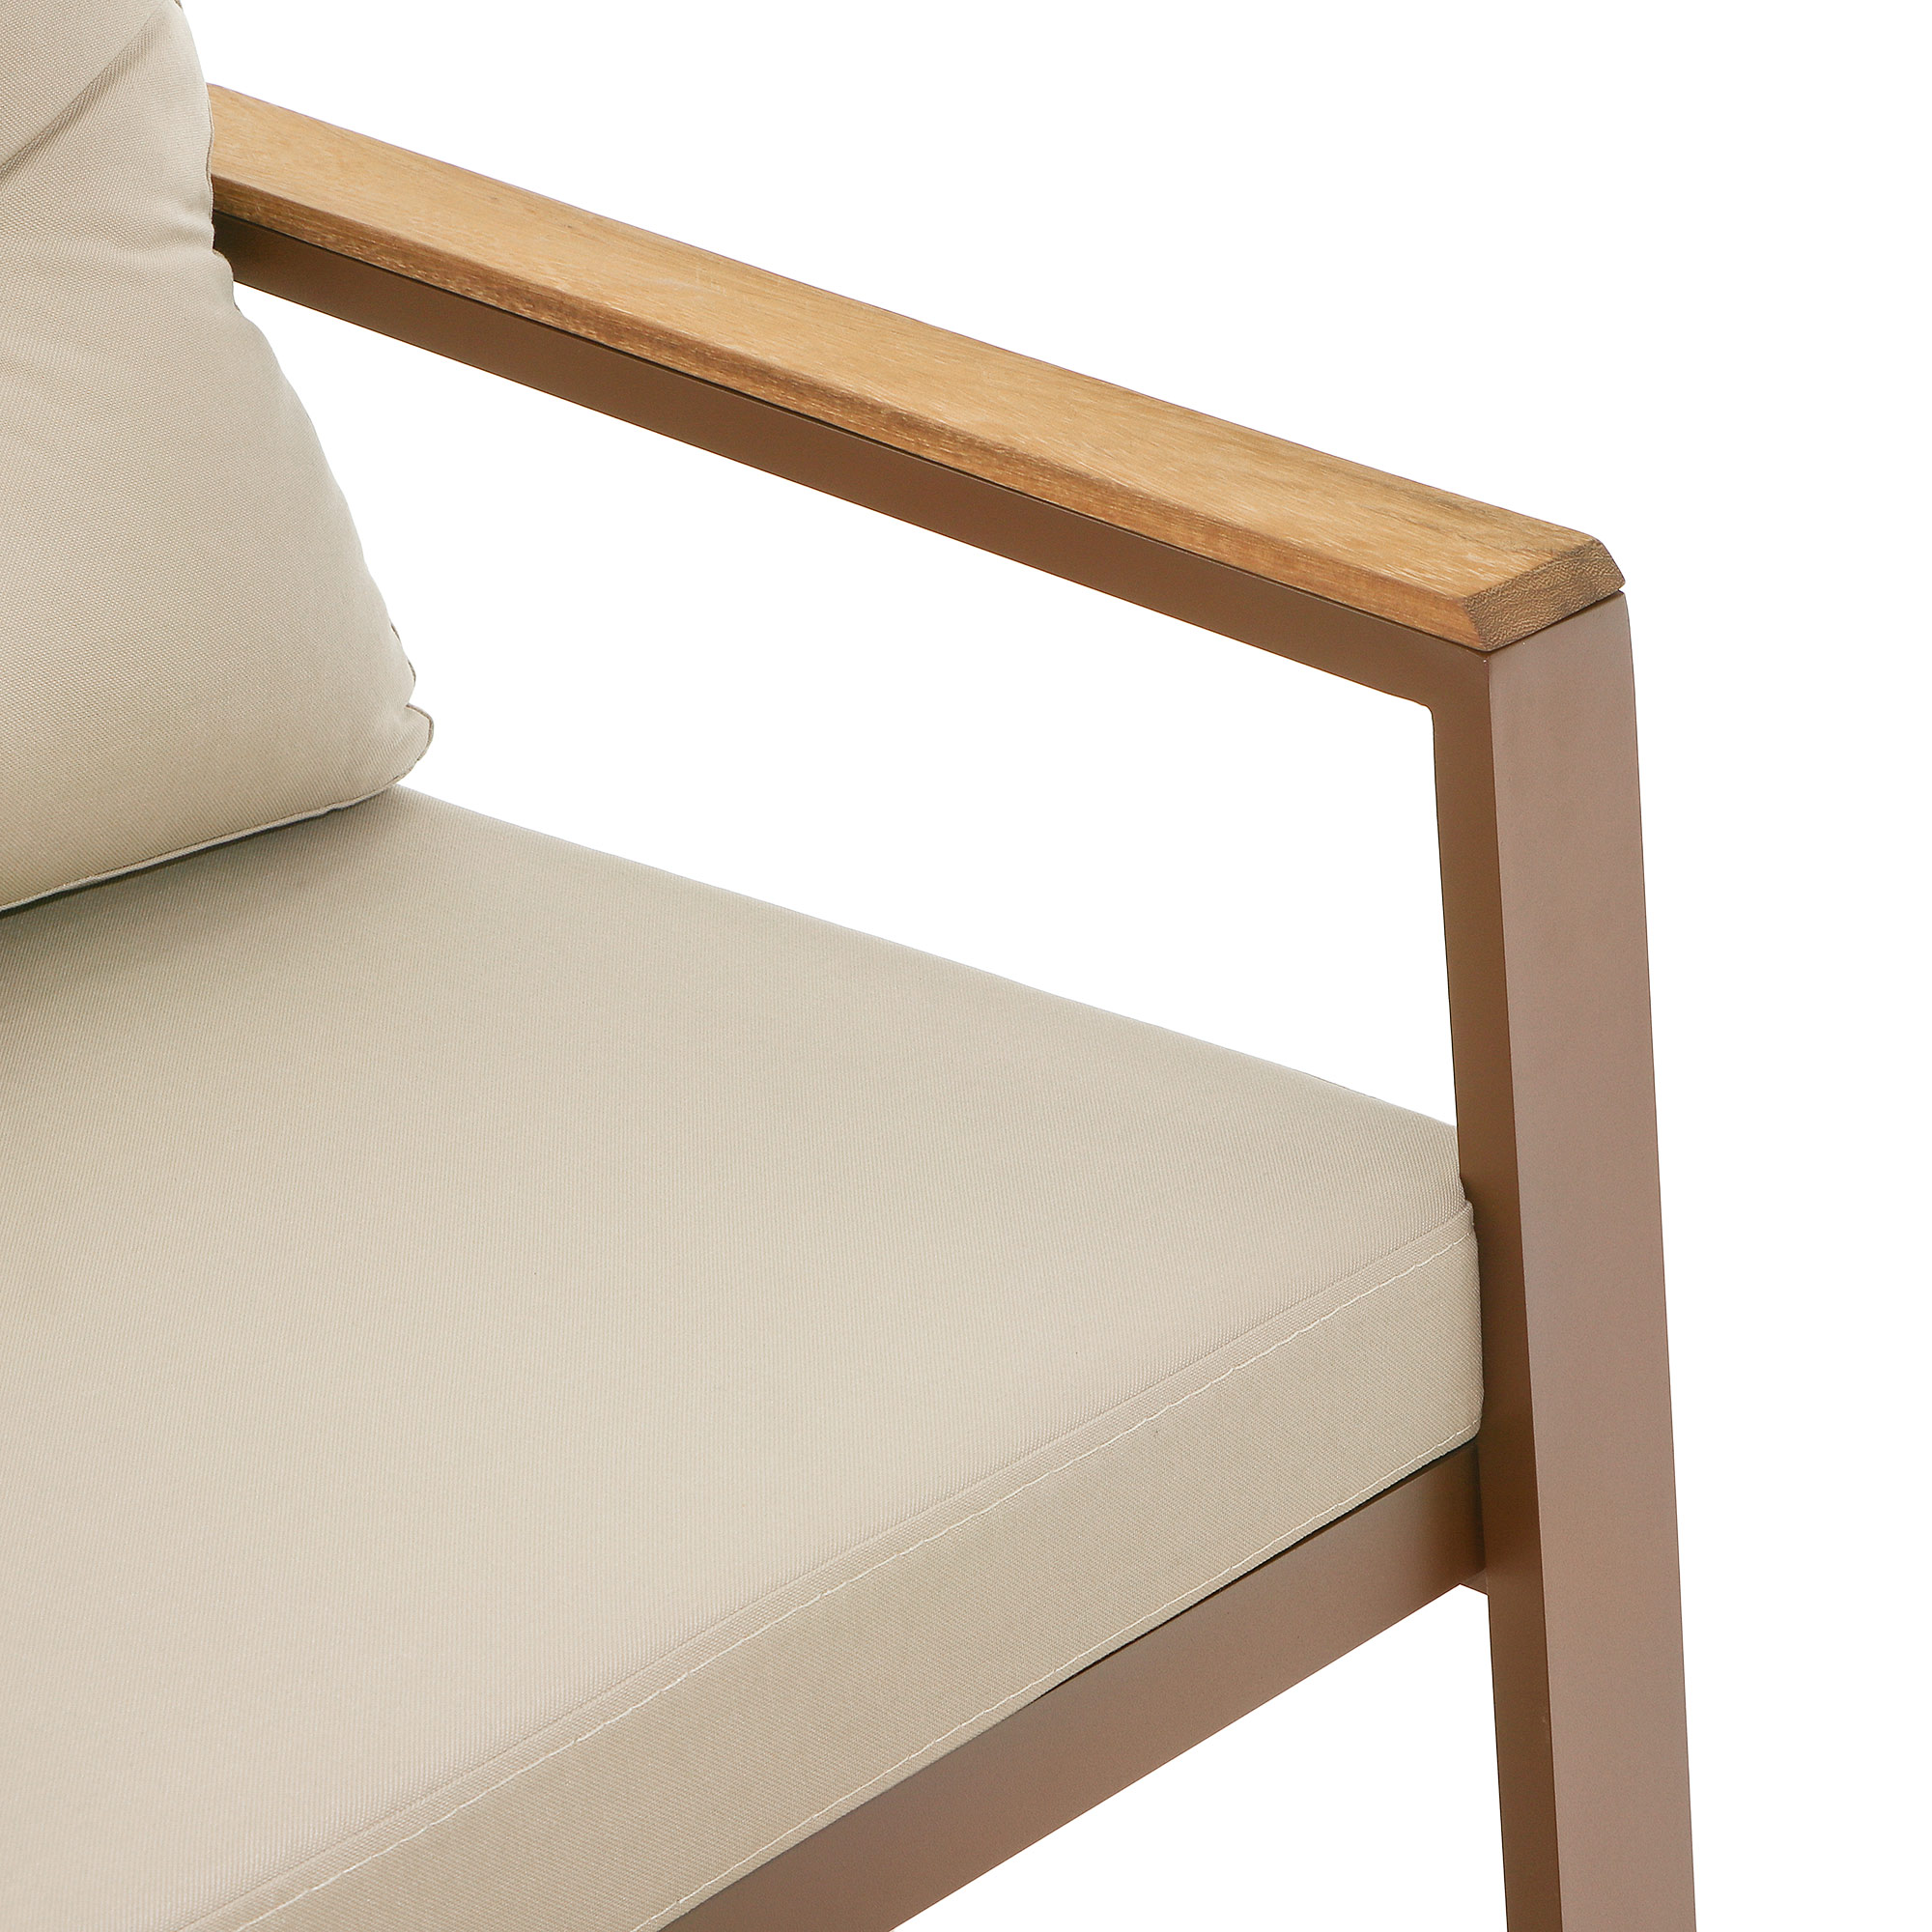 фото Комплект мебели erinoz daphne:диван двухместный+2 кресла